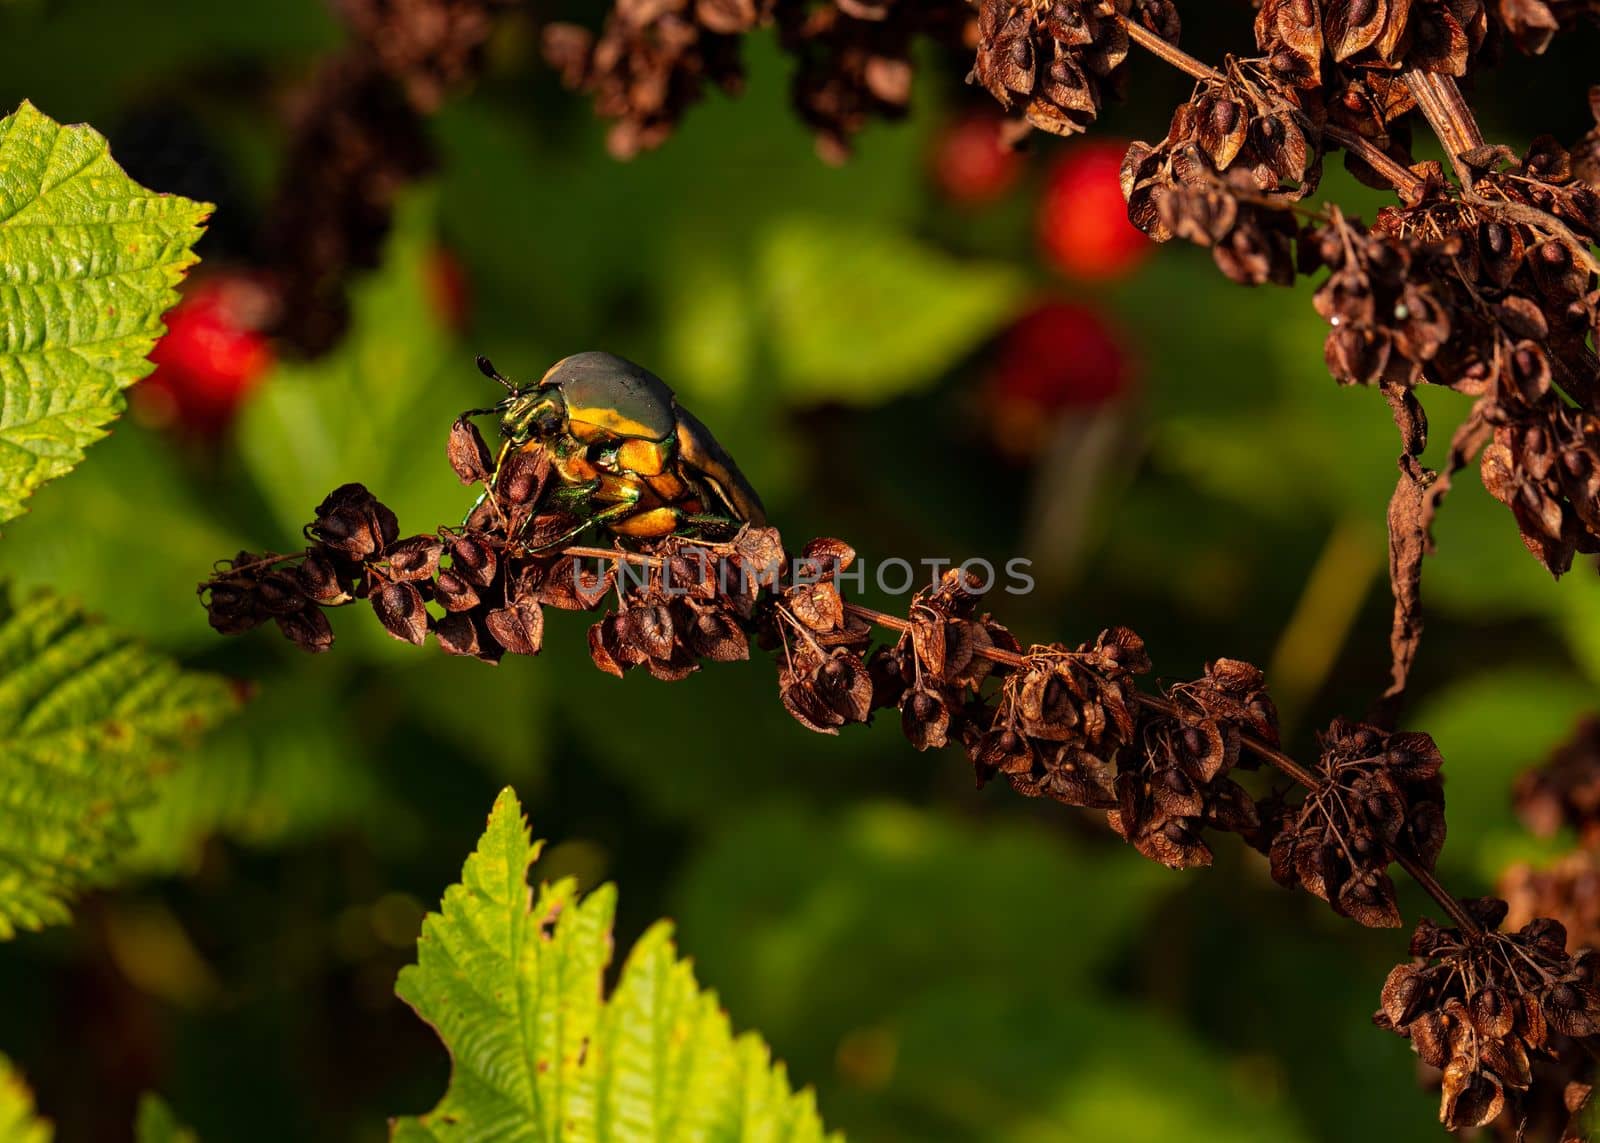 Green June Beetle Closeup by CharlieFloyd